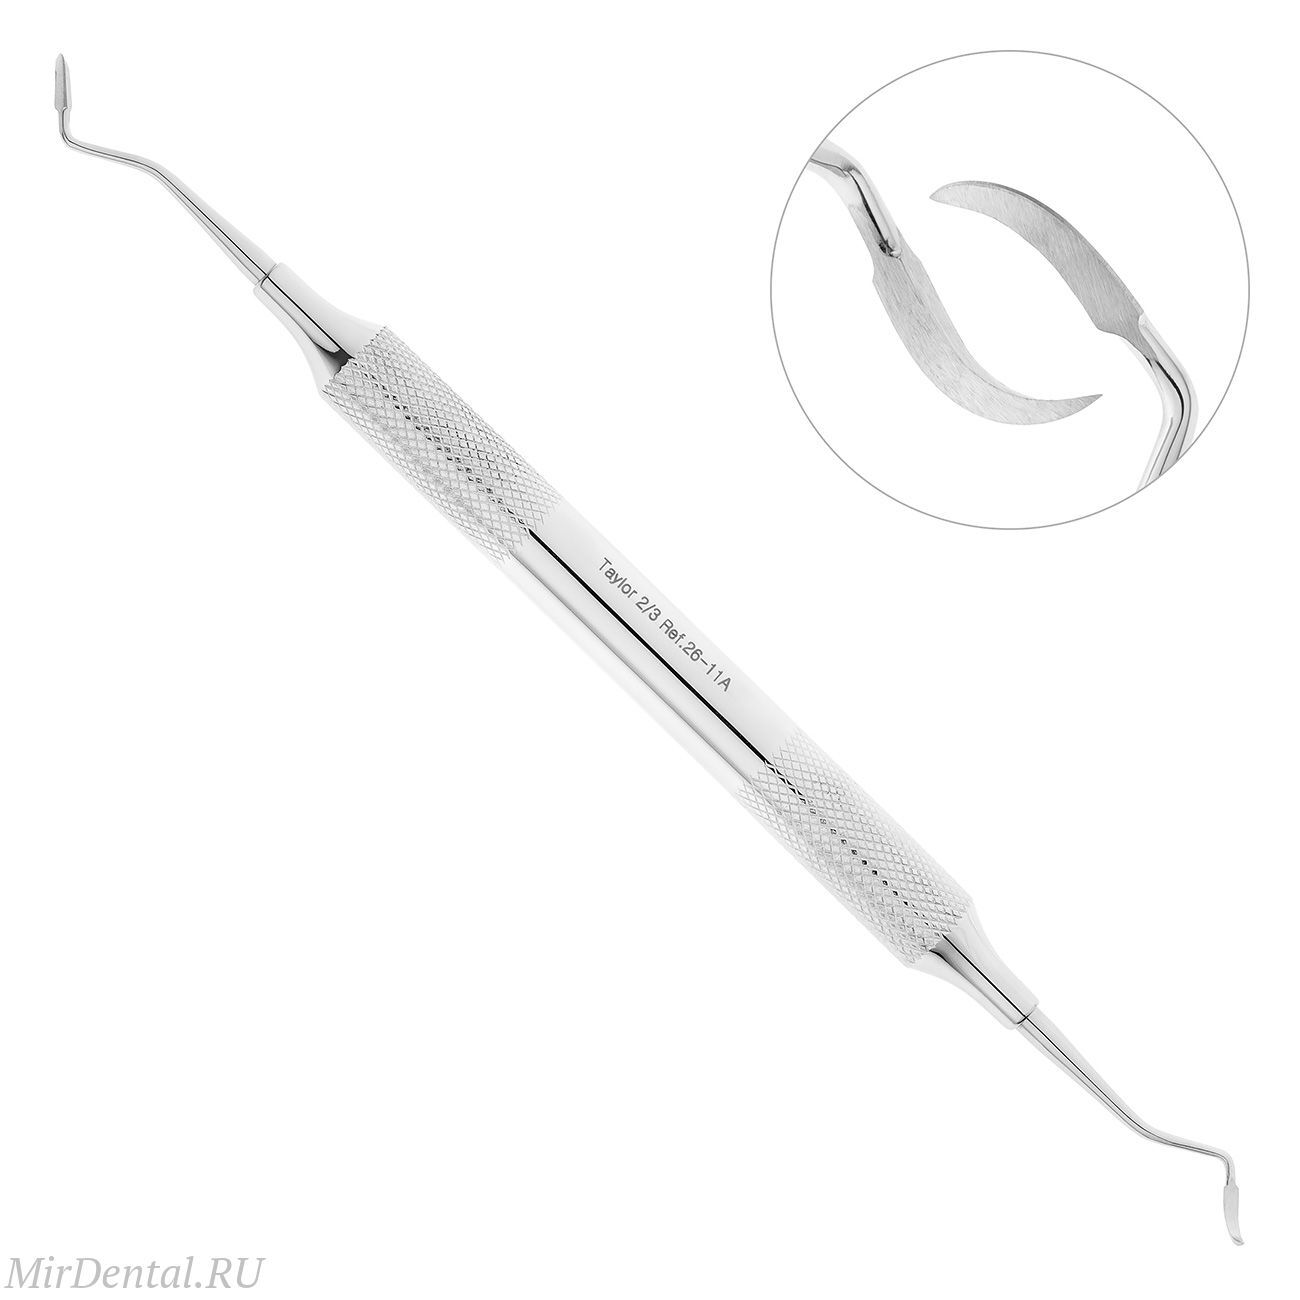 Скейлер парадонтологический, форма T2/3, ручка CLASSIC, диаметр 10 мм, 26-11A*